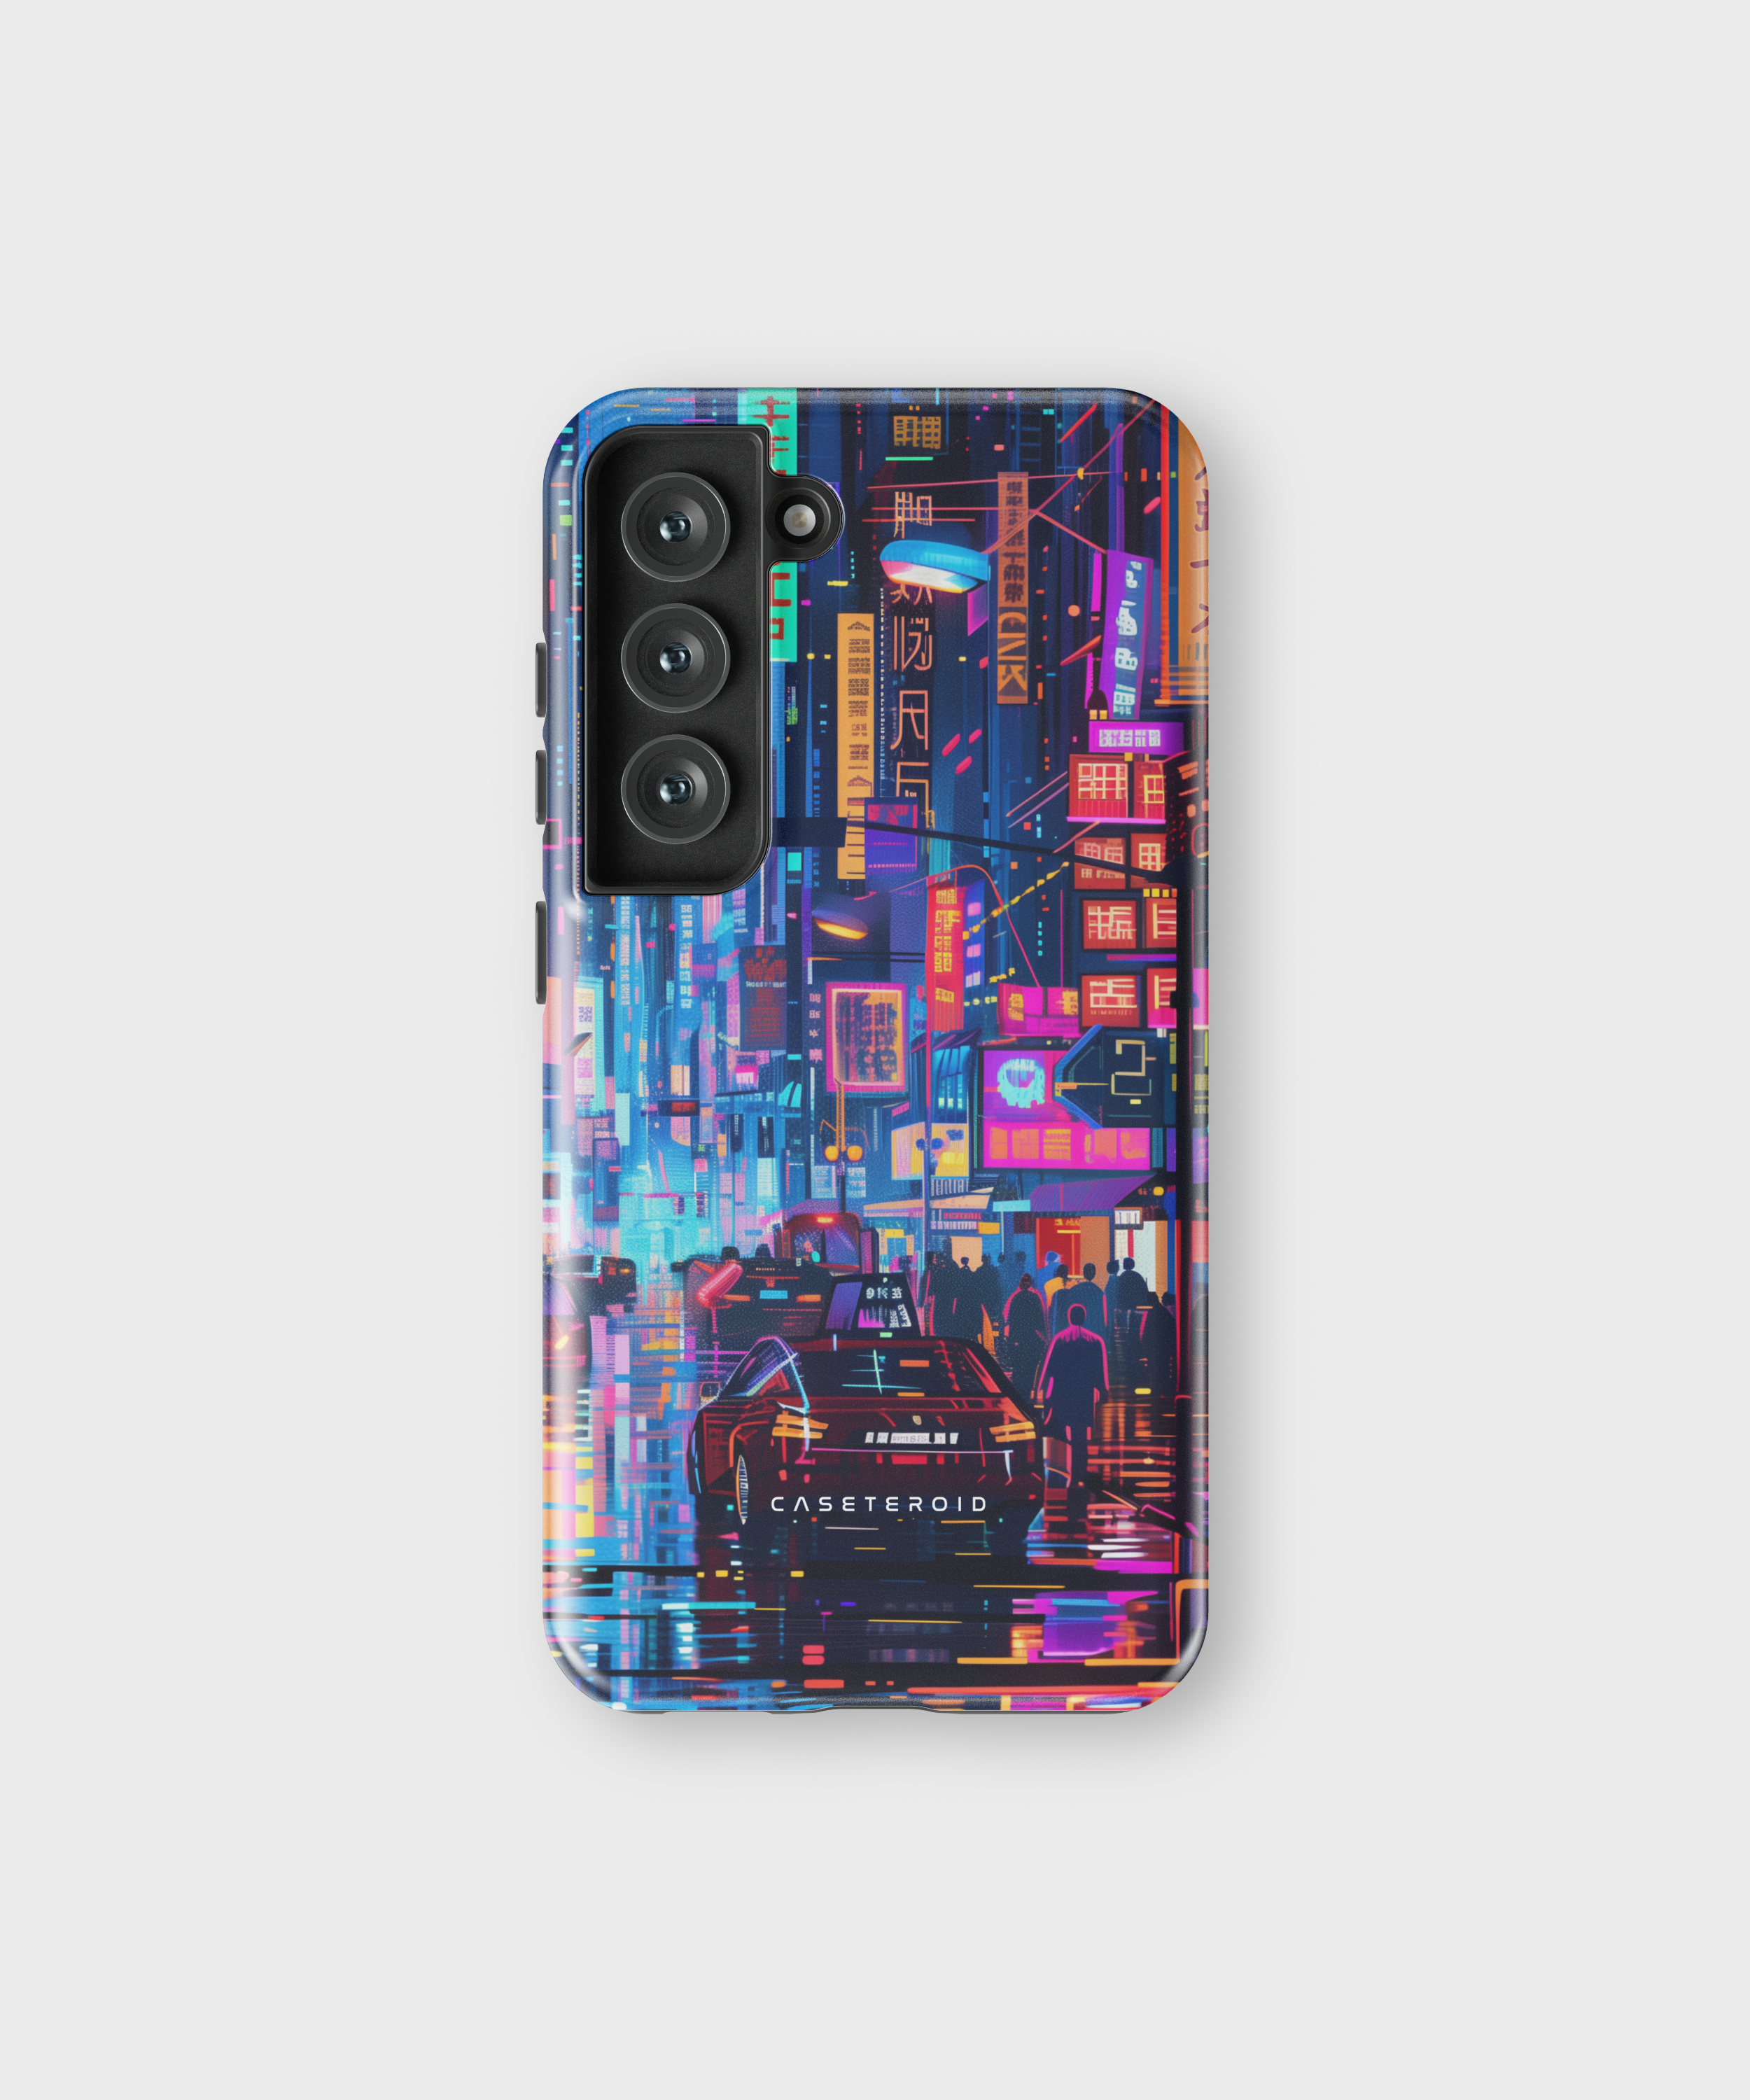 Samsung Tough Case - Neon Metropolis Matrix - CASETEROID